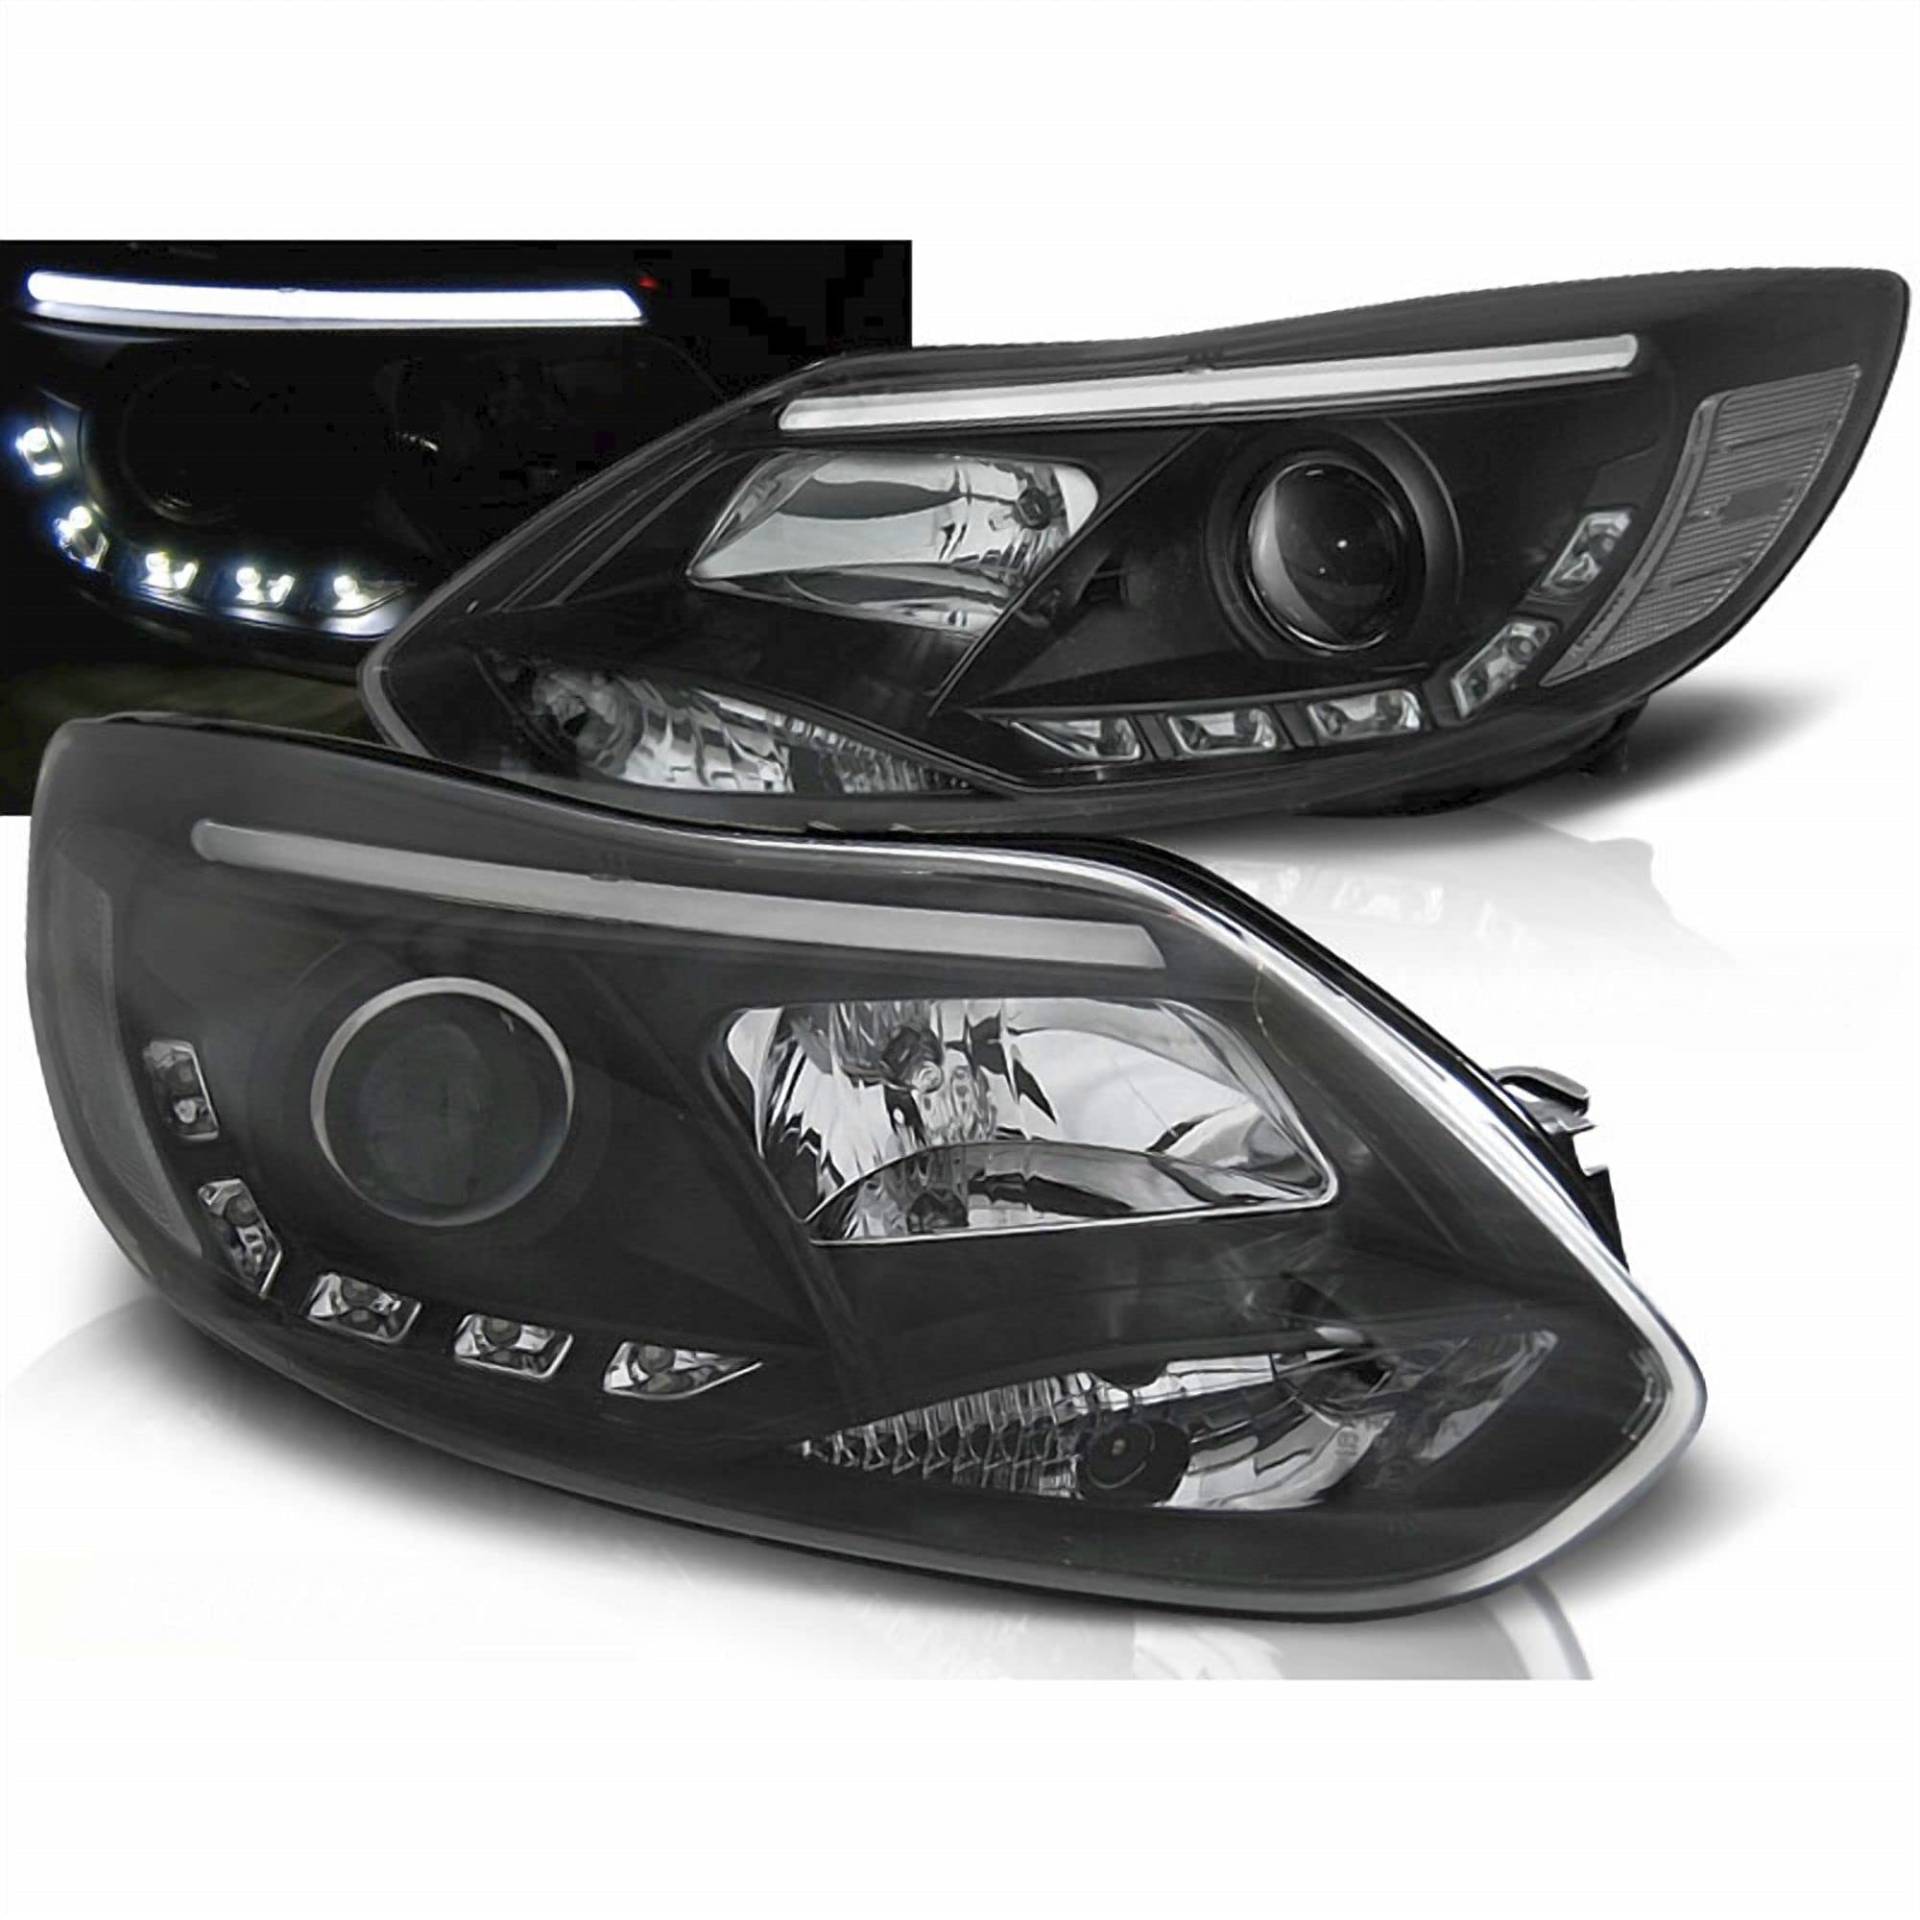 LED Light Tube Scheinwerfer in schwarz für Ford Focus MK3 2011-2014 von CR-Lights